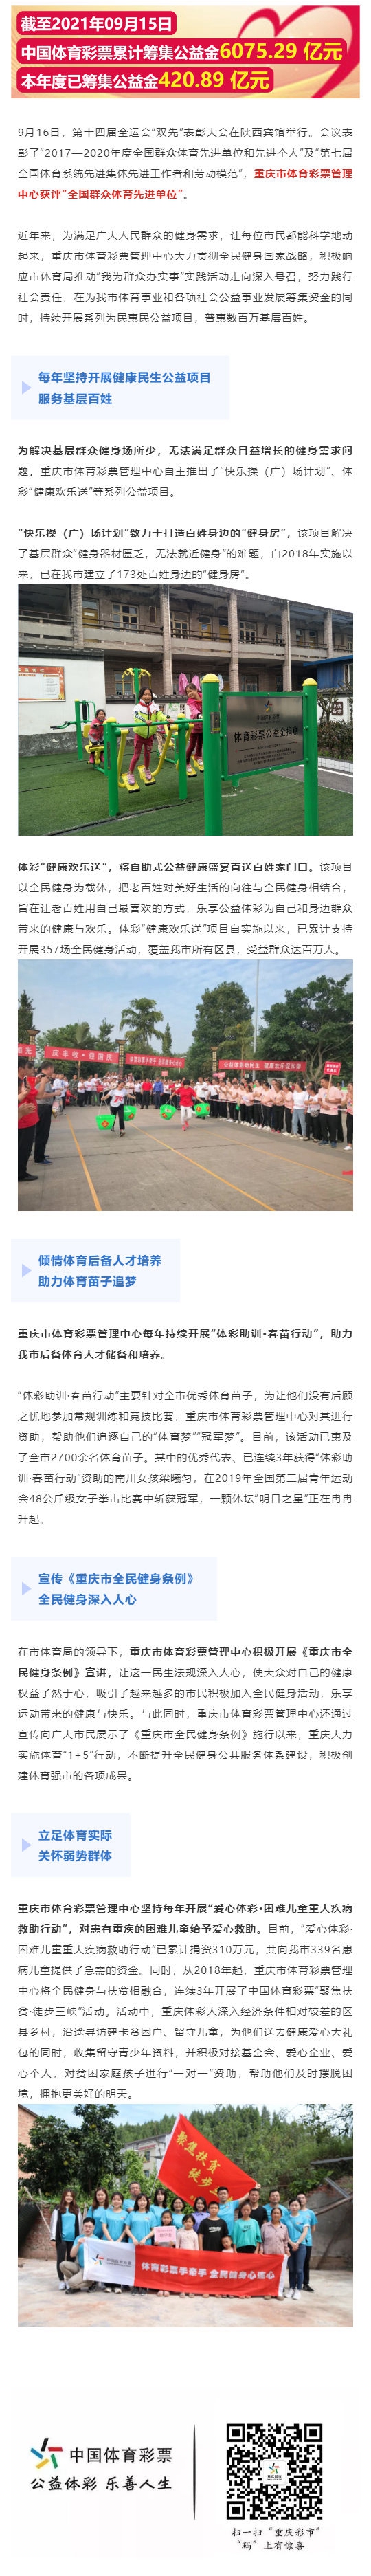 重庆市体育彩票管理中心获评全国群众体育先进单位_壹伴长图1.jpg